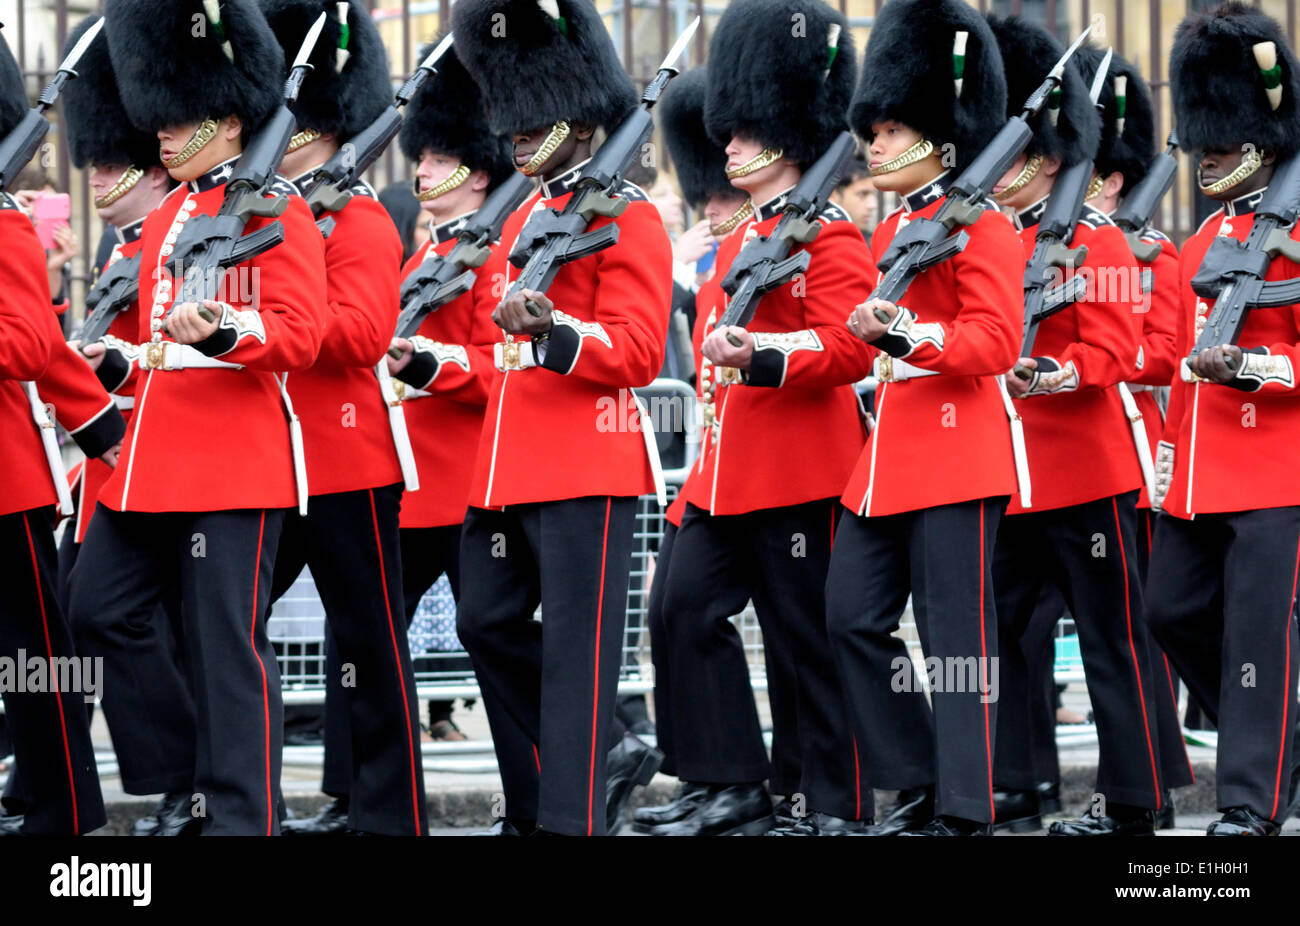 Le Welsh Guards marchant passé après l'ouverture du Parlement, Westminster, Londres. Londres, Royaume-Uni. 04 Juin, 2014. Banque D'Images